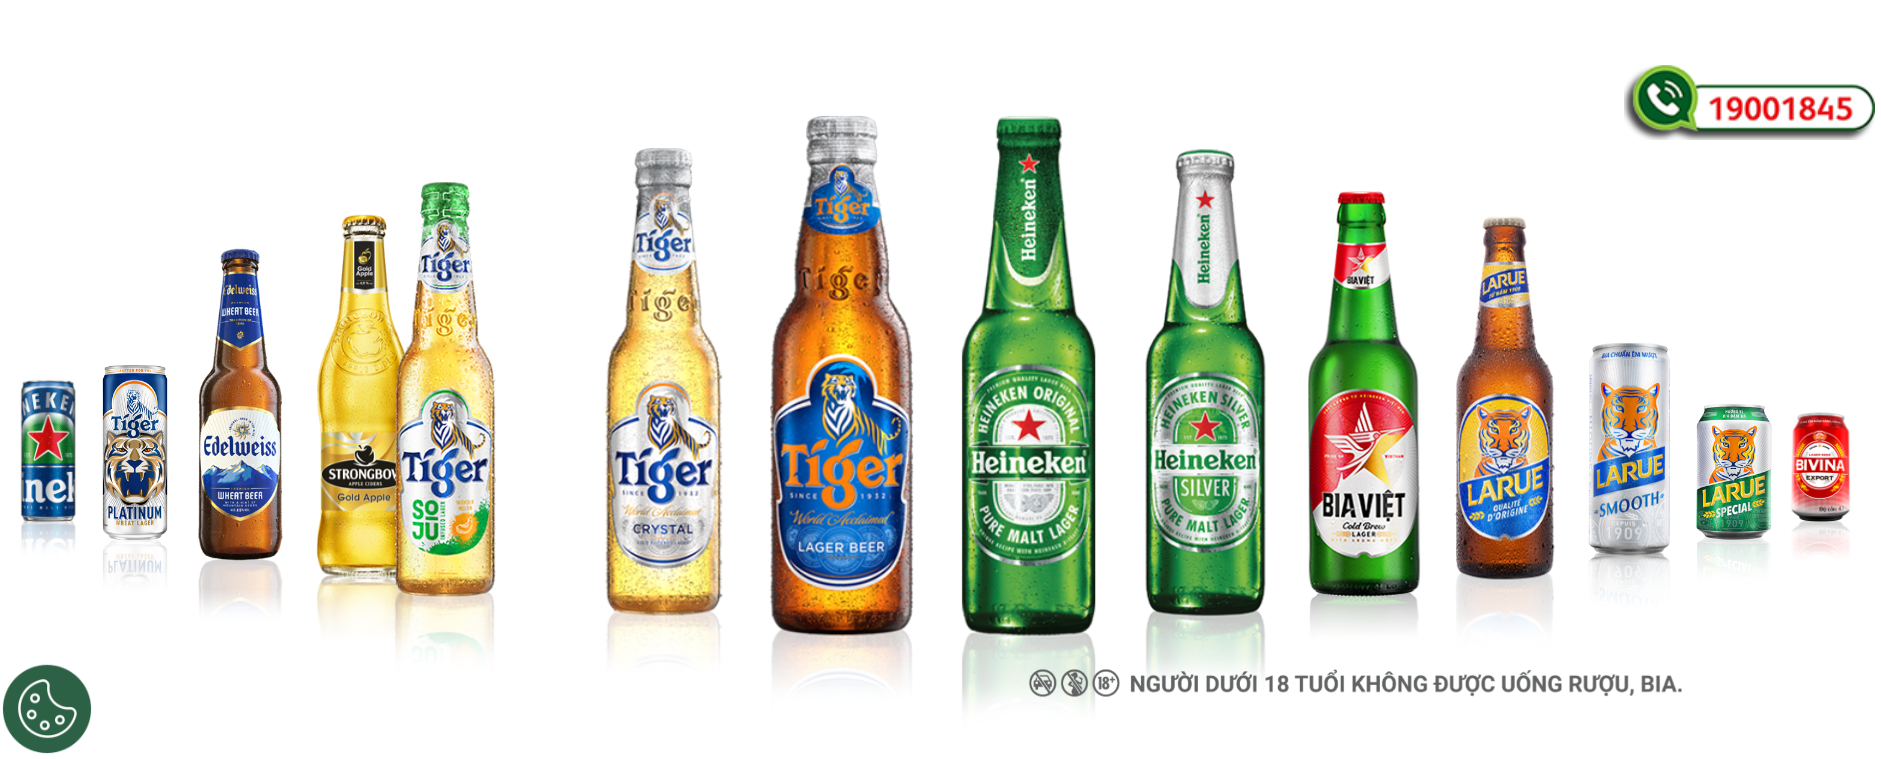 Heineken ‘bá chủ’ thị trường bia Việt Nam: Doanh thu kỷ lục 36.000 tỷ, lợi nhuận bằng cả Sabeco, Habeco và các thương hiệu lớn khác cộng lại- Ảnh 4.